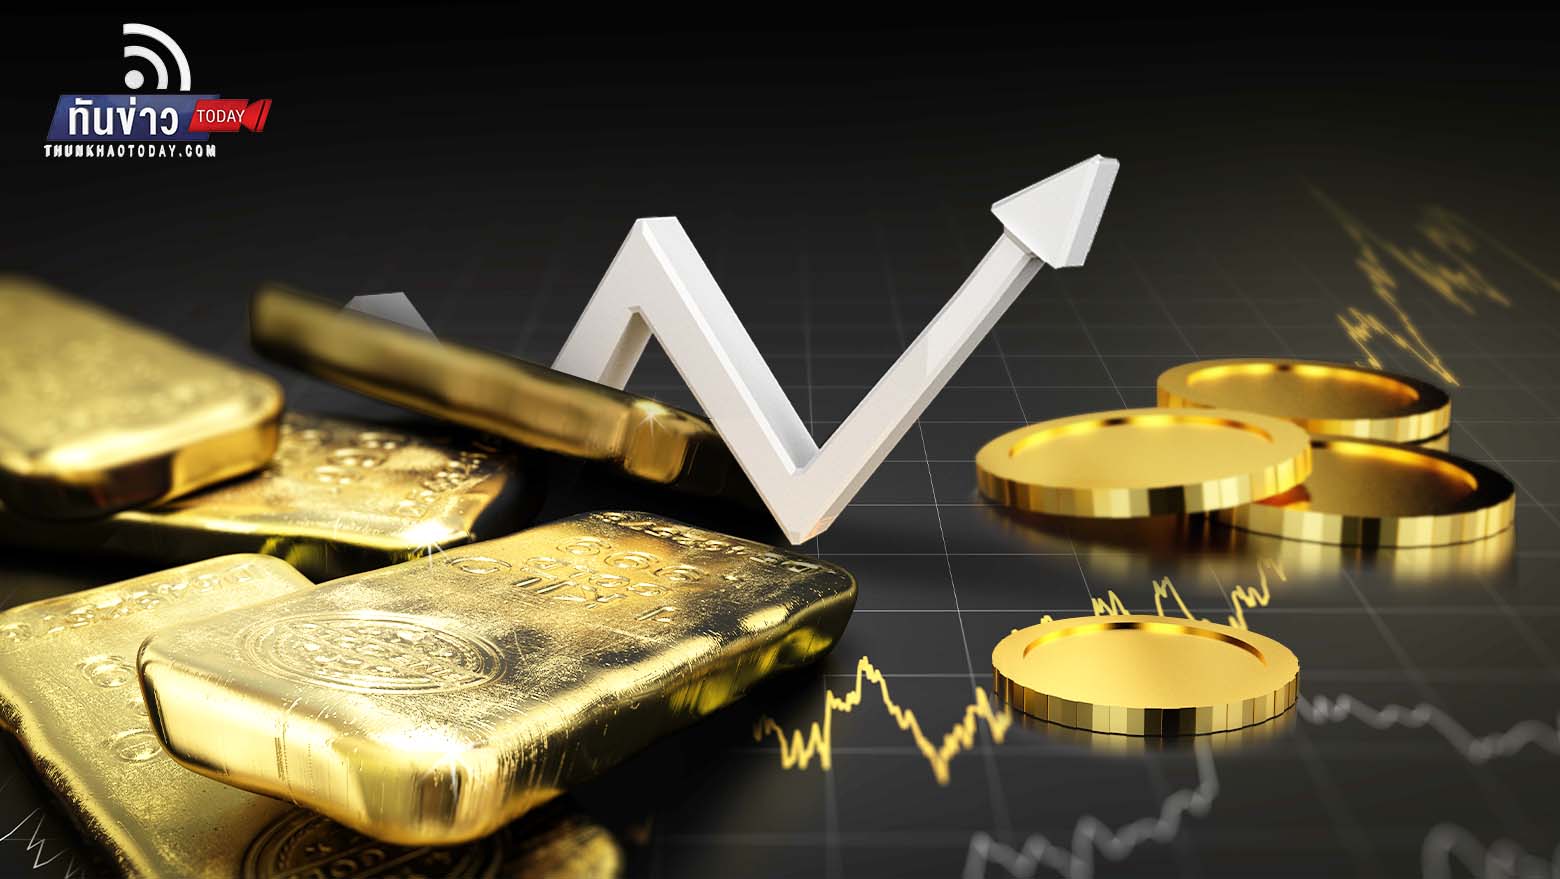 “นักวิเคราะห์คาดทองคำจ่อแตะ 1,950 ดอลลาร์ สูงสุดในรอบ 8 เดือน หวั่นเศรษฐกิจโลกถดถอย หลังเงินเฟ้อสหรัฐฯ แผ่วเหลือ 6.5% สัปดาห์ก่อน